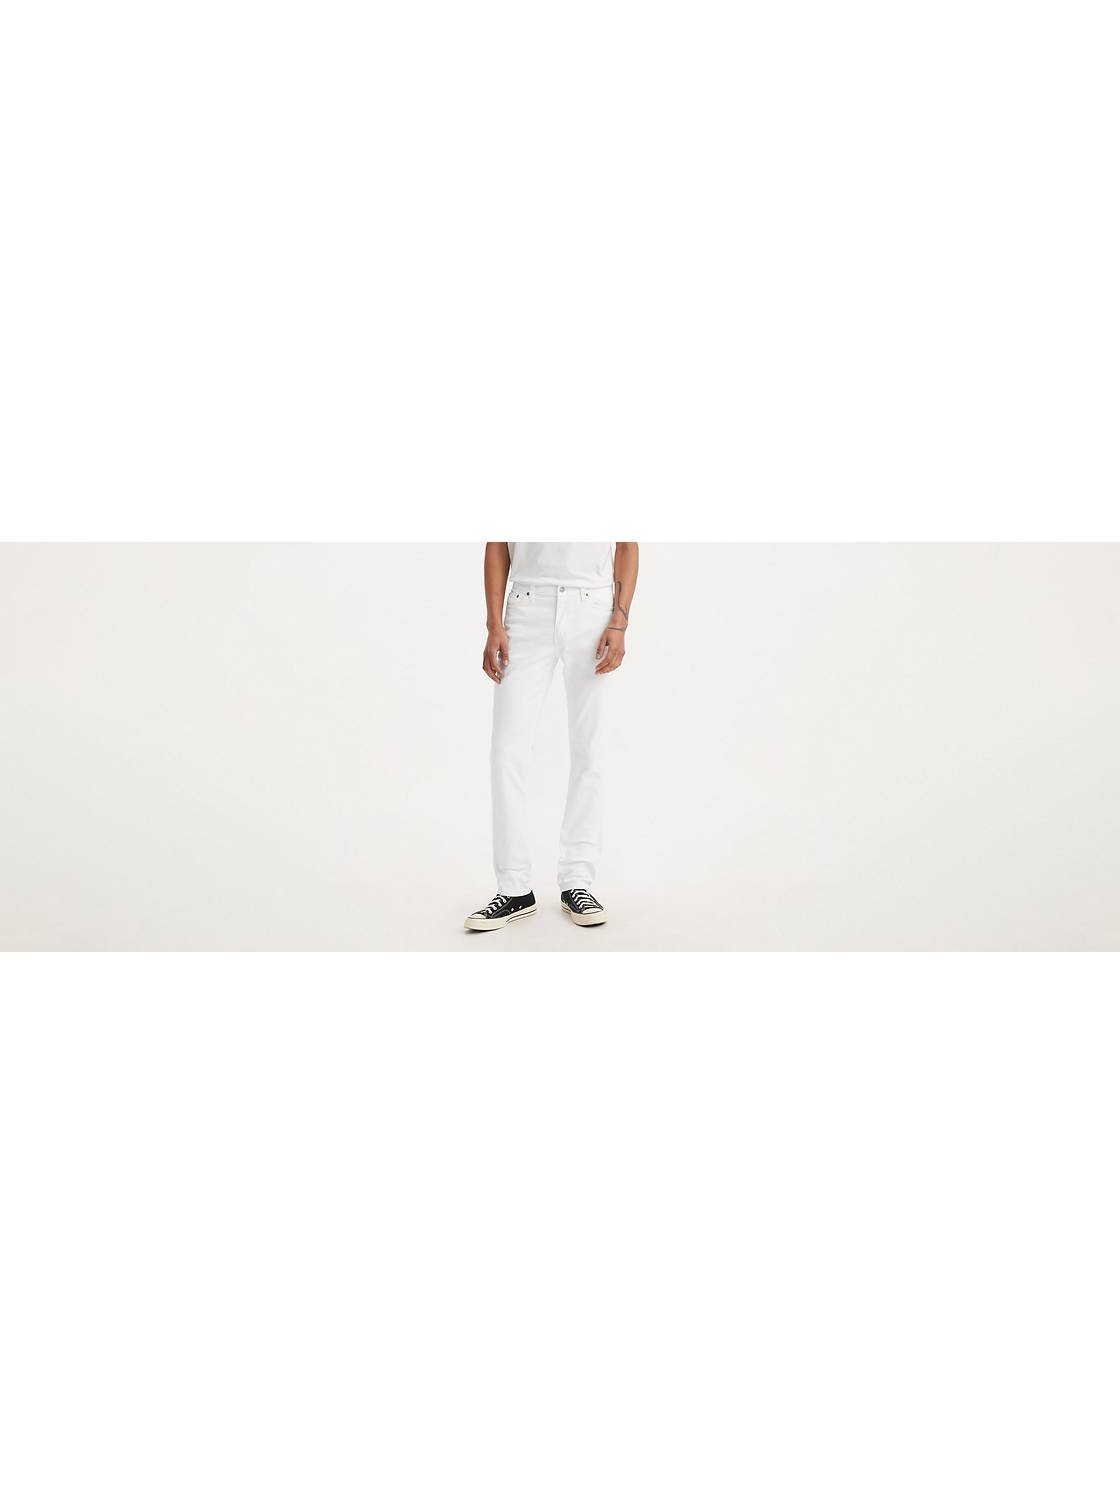 Men'S White Jeans - Shop Jeans For Men | Levi'S® Us